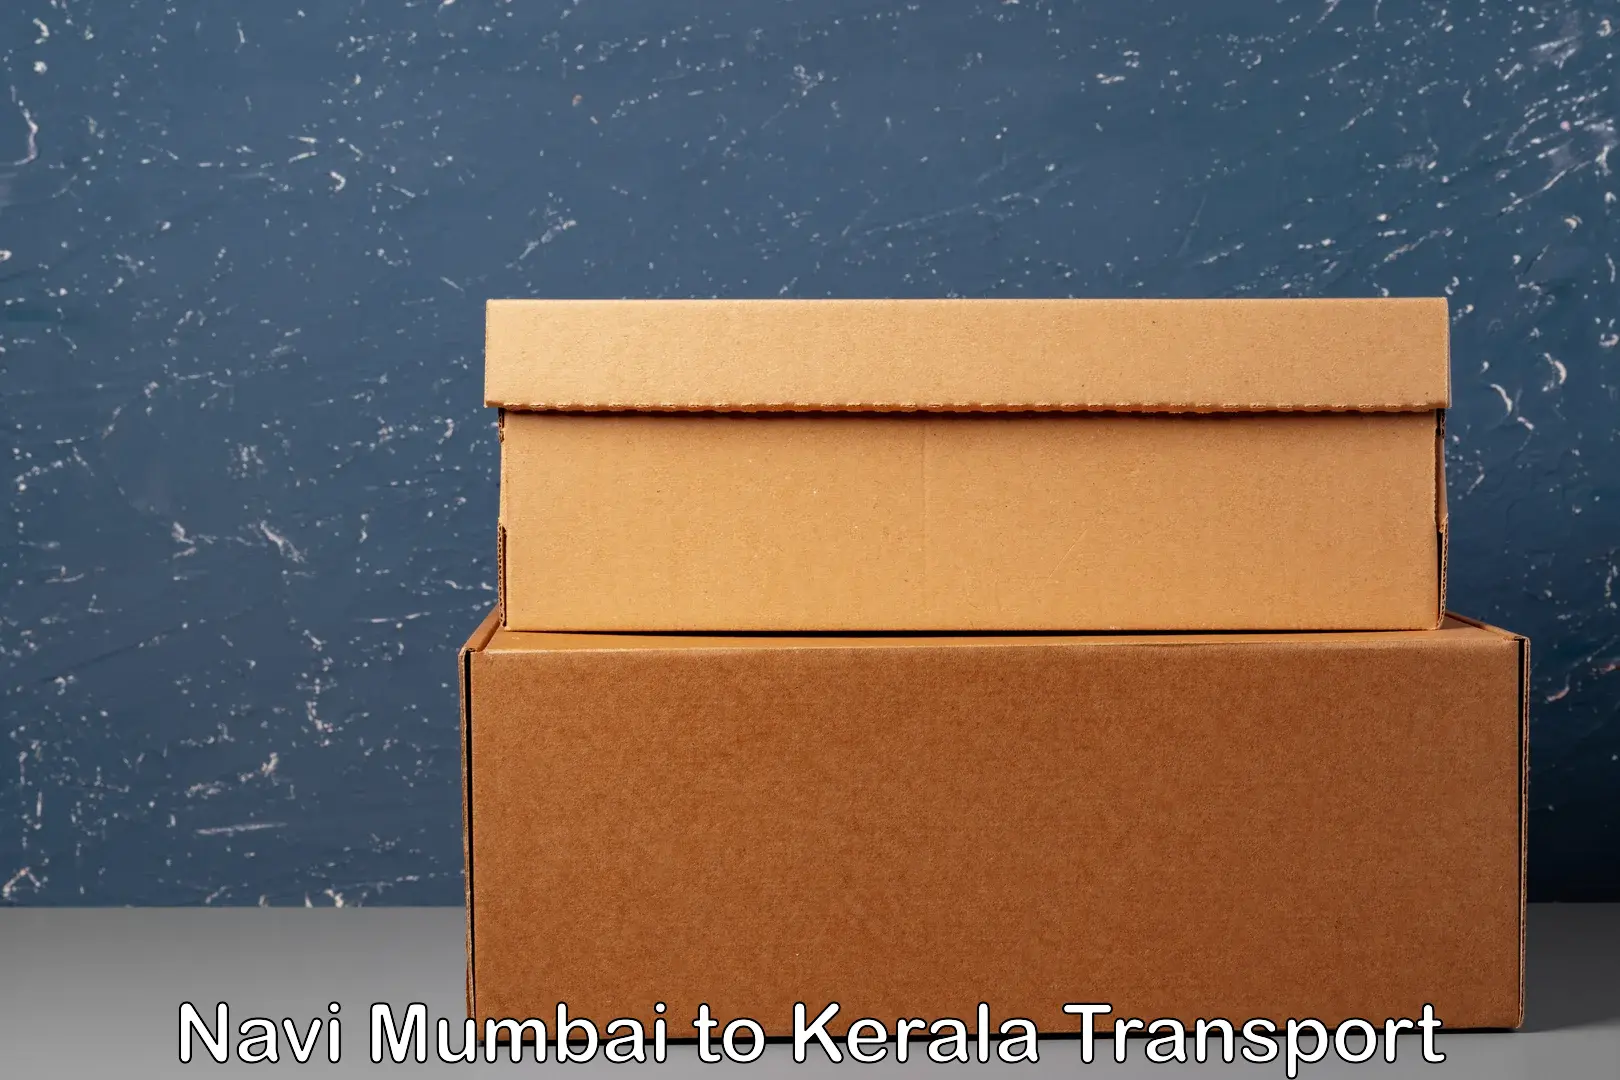 Container transport service Navi Mumbai to Punalur